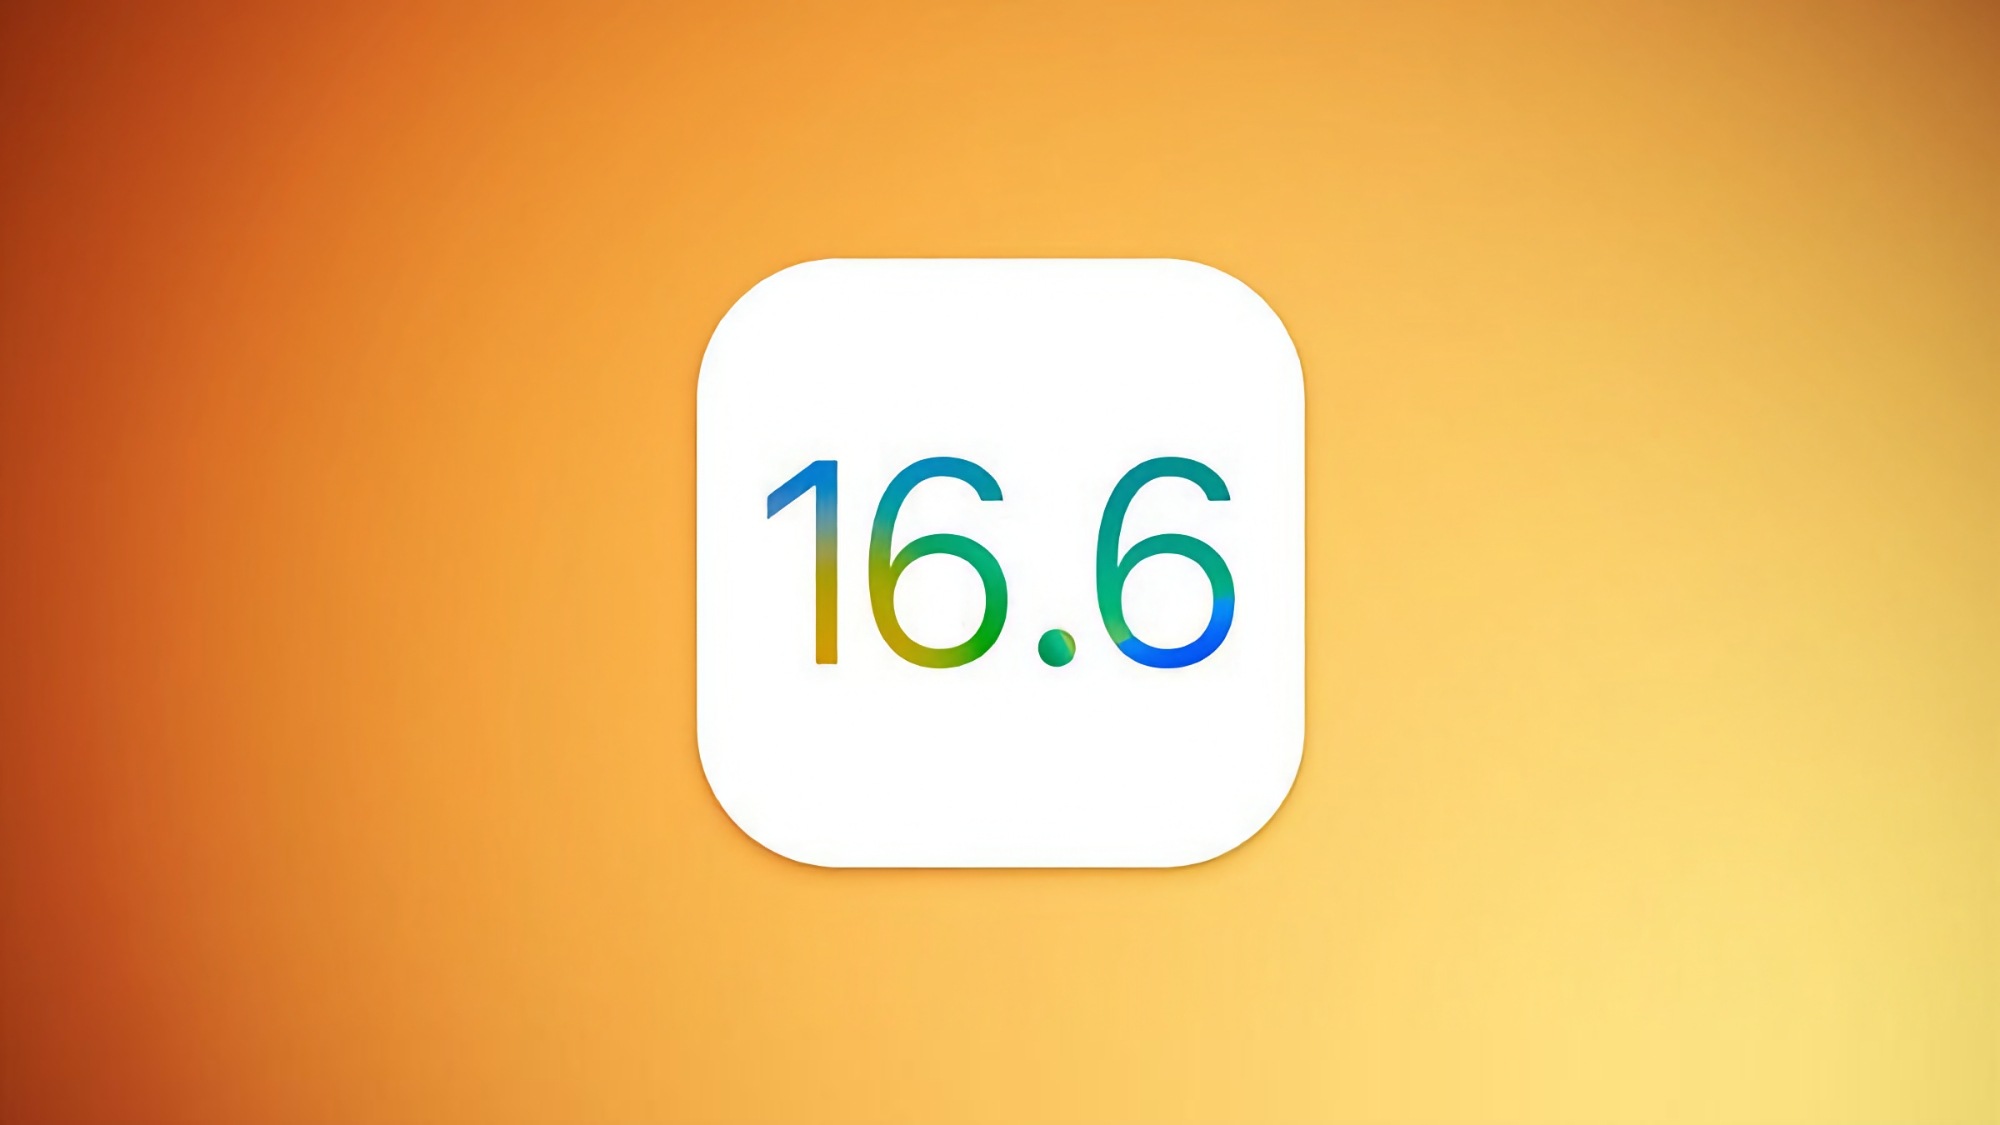 Apple releases third public beta of iOS 16.6